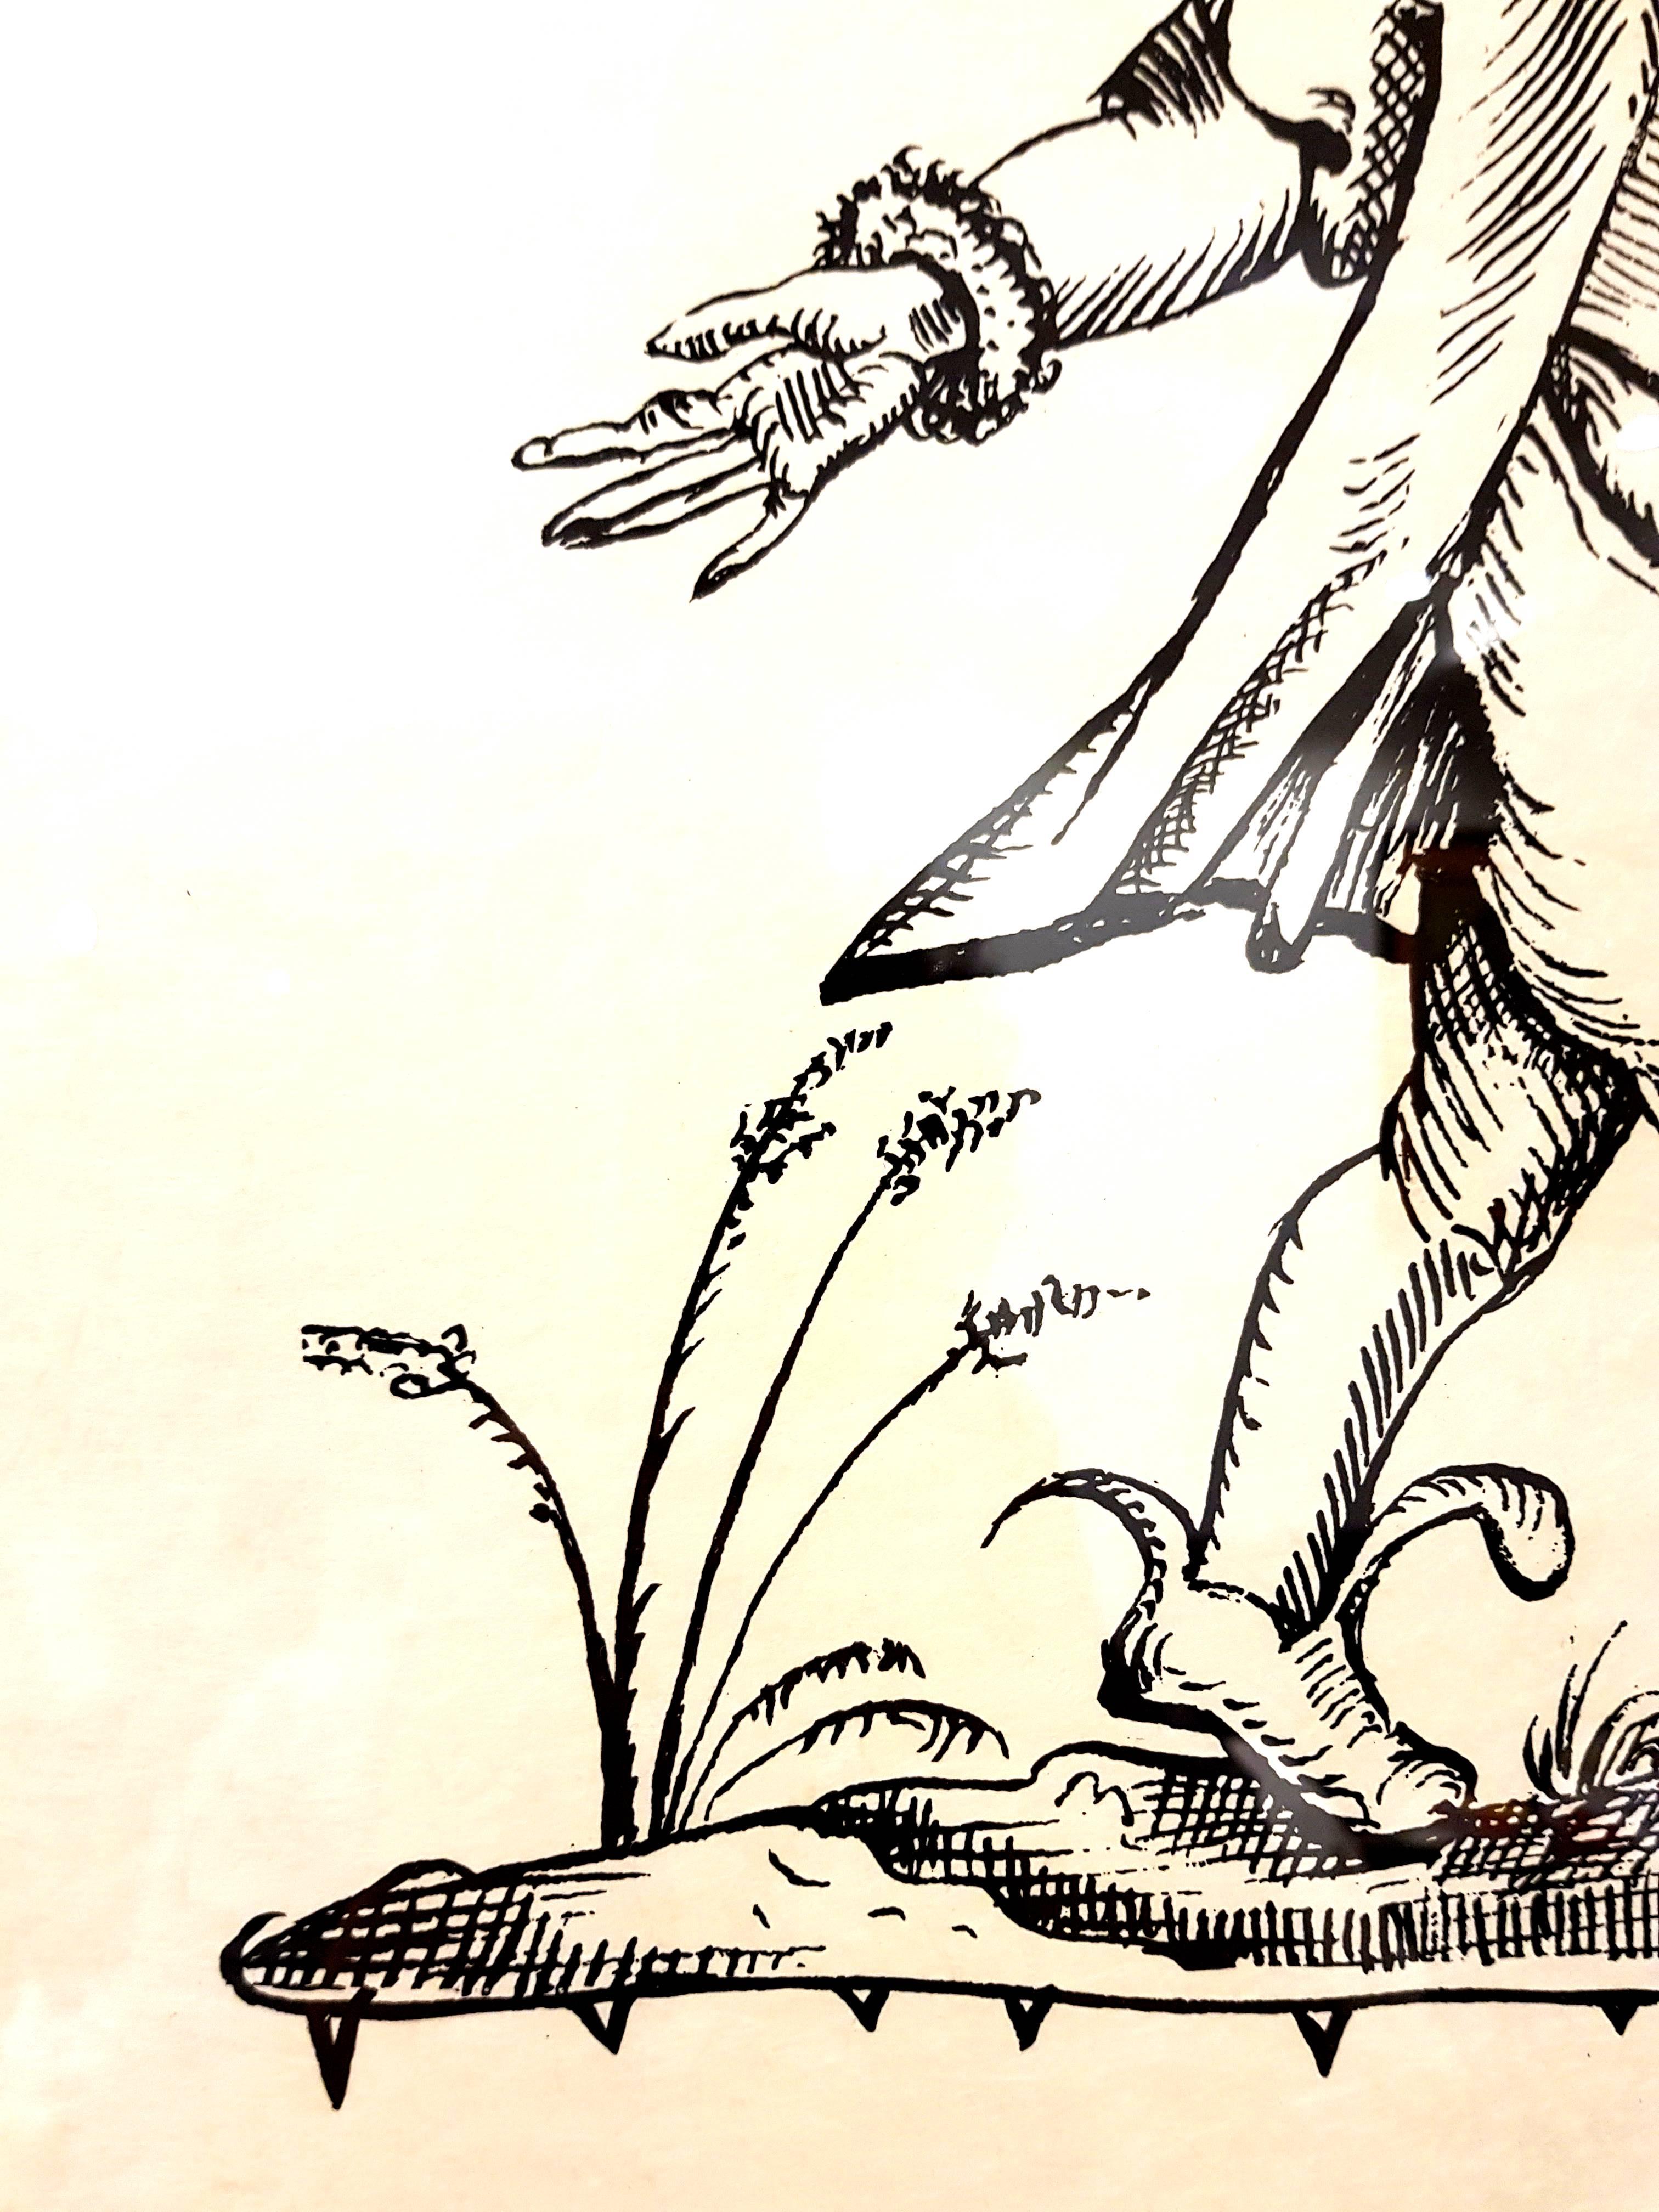 Handsignierte Lithographie von Salvador Dali
Japanpapier
Titel: Pantagruels Träume
Mit Bleistift signiert von Salvador Dali
Abmessungen: 76 x 56 cm
Auflage: EA
1973
Referenzen: Field 73-7 (S. 173-174) / Michler & Lopsinger 1398-1422 (t.2 S.